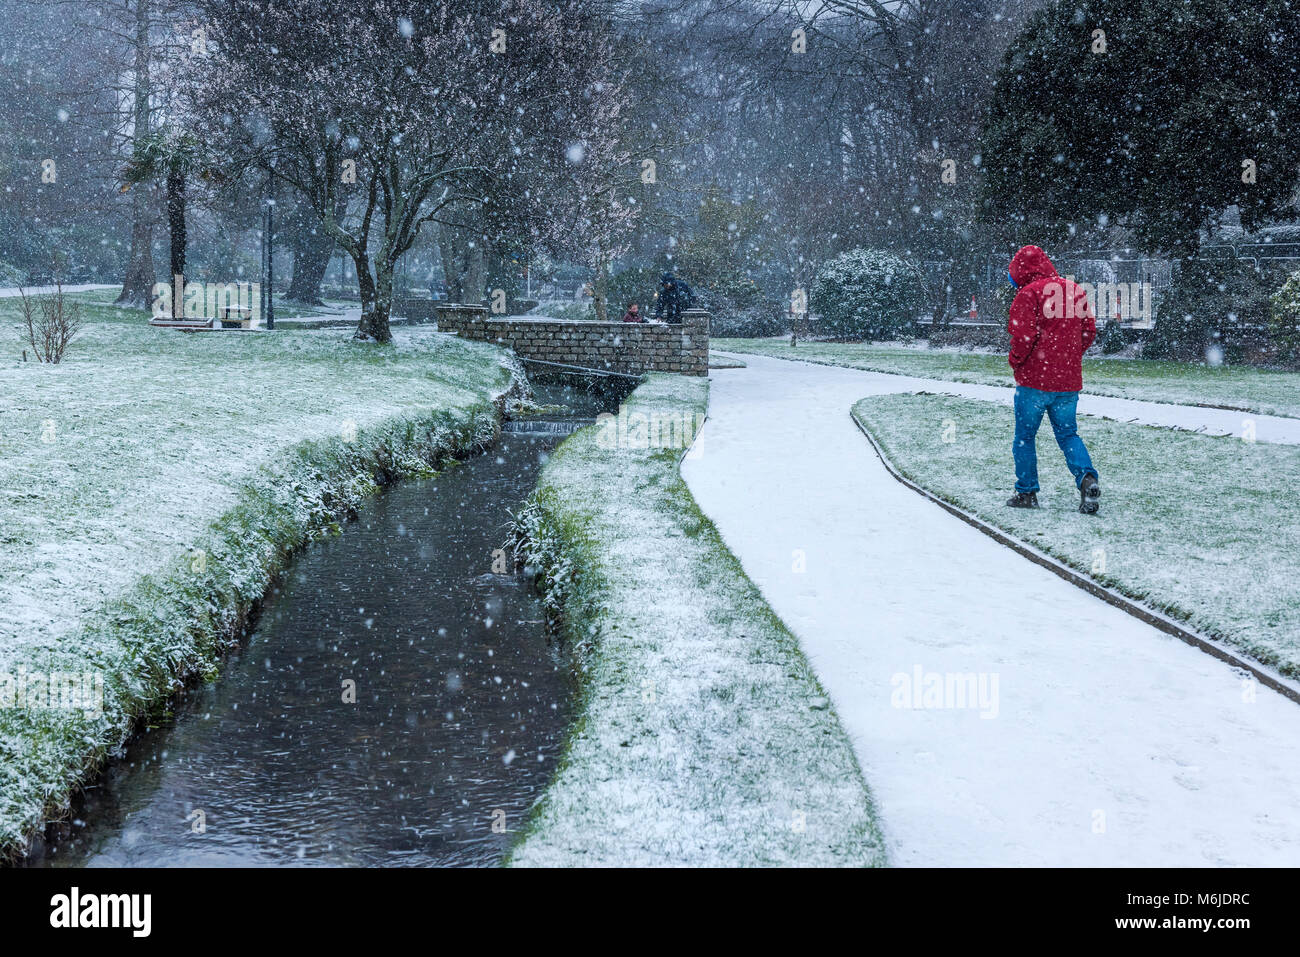 Les gens marchent à travers de fortes chutes de neige dans Trenance Gardens à Newquay Cornwall au Royaume-Uni. Banque D'Images